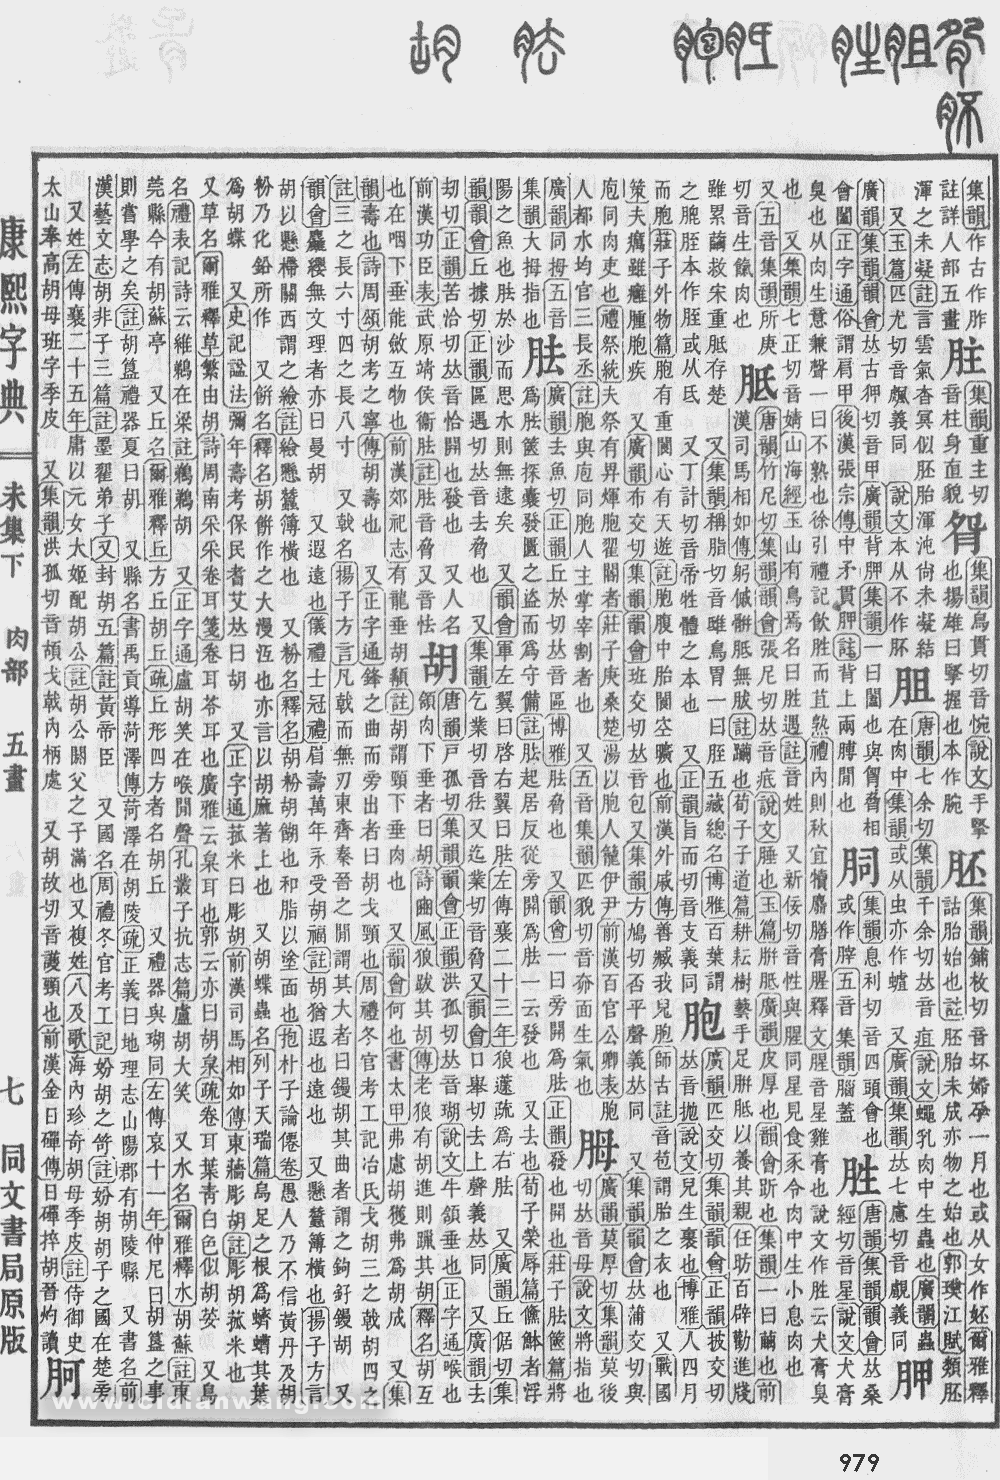 康熙字典掃描版第979頁